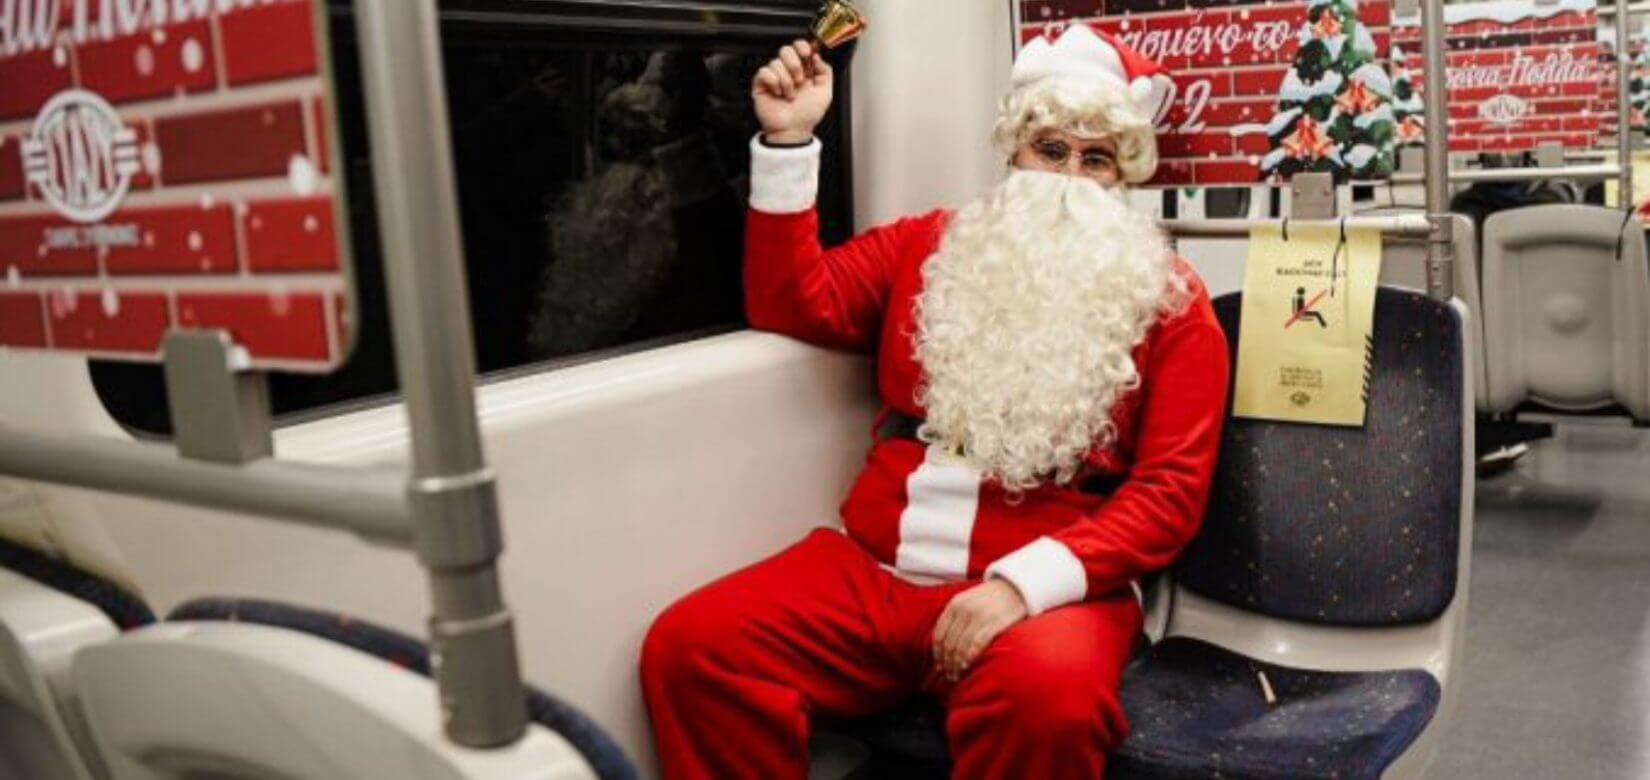 Ο Άγιος Βασίλης άφησε το έλκηθρο και πάει βόλτα με το... Μετρό